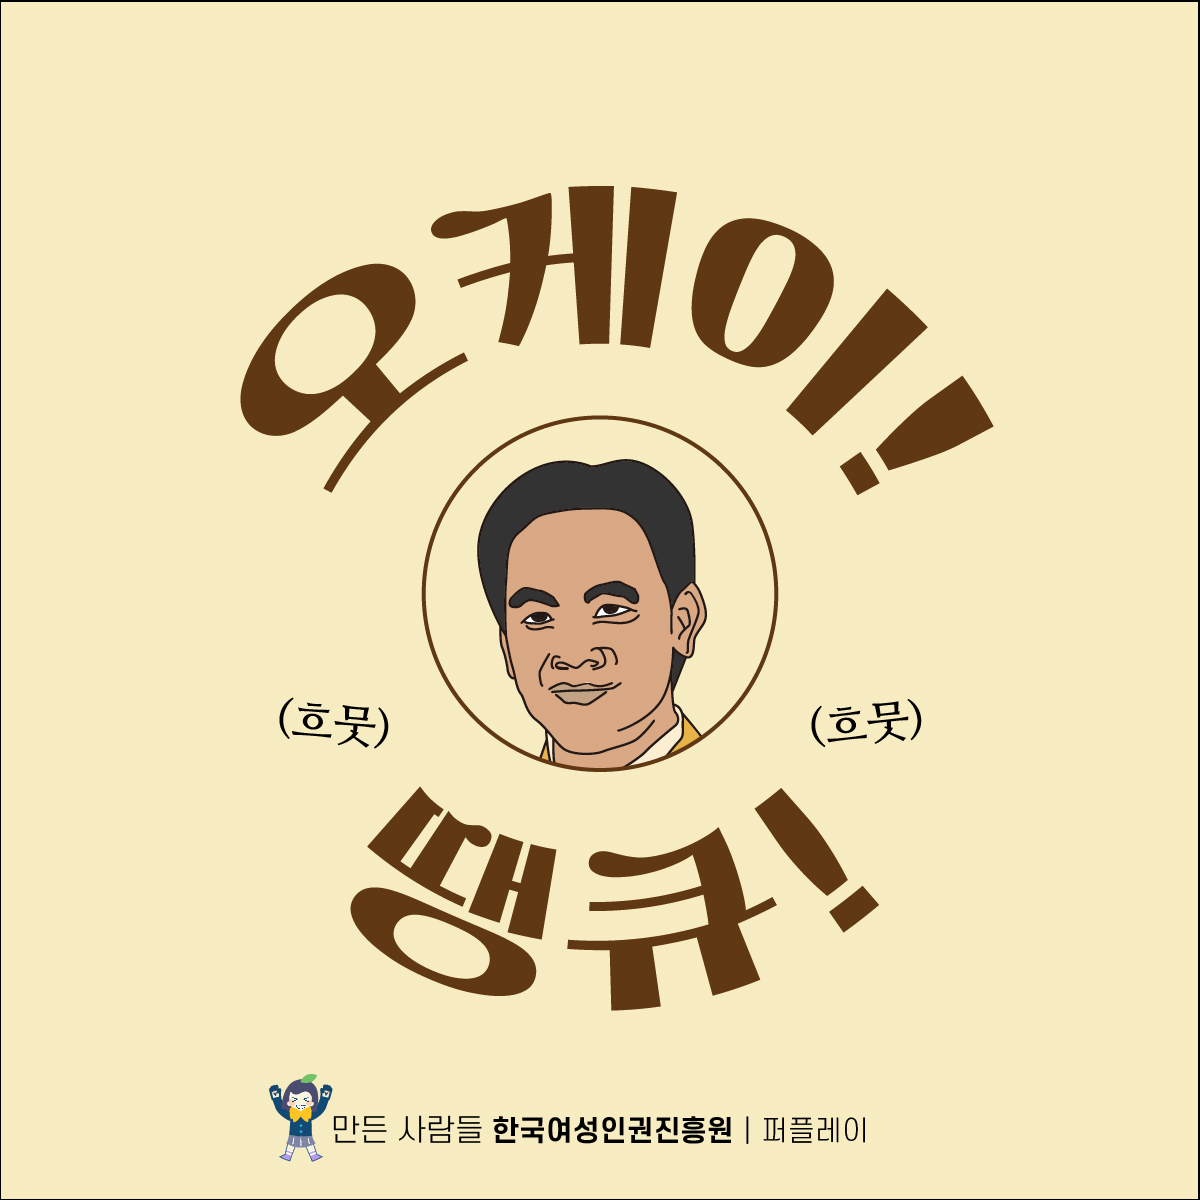 17장 오케이! (흐뭇) (흐뭇) 땡큐! 만든 사람들 한국여성인권진흥원 퍼플레이